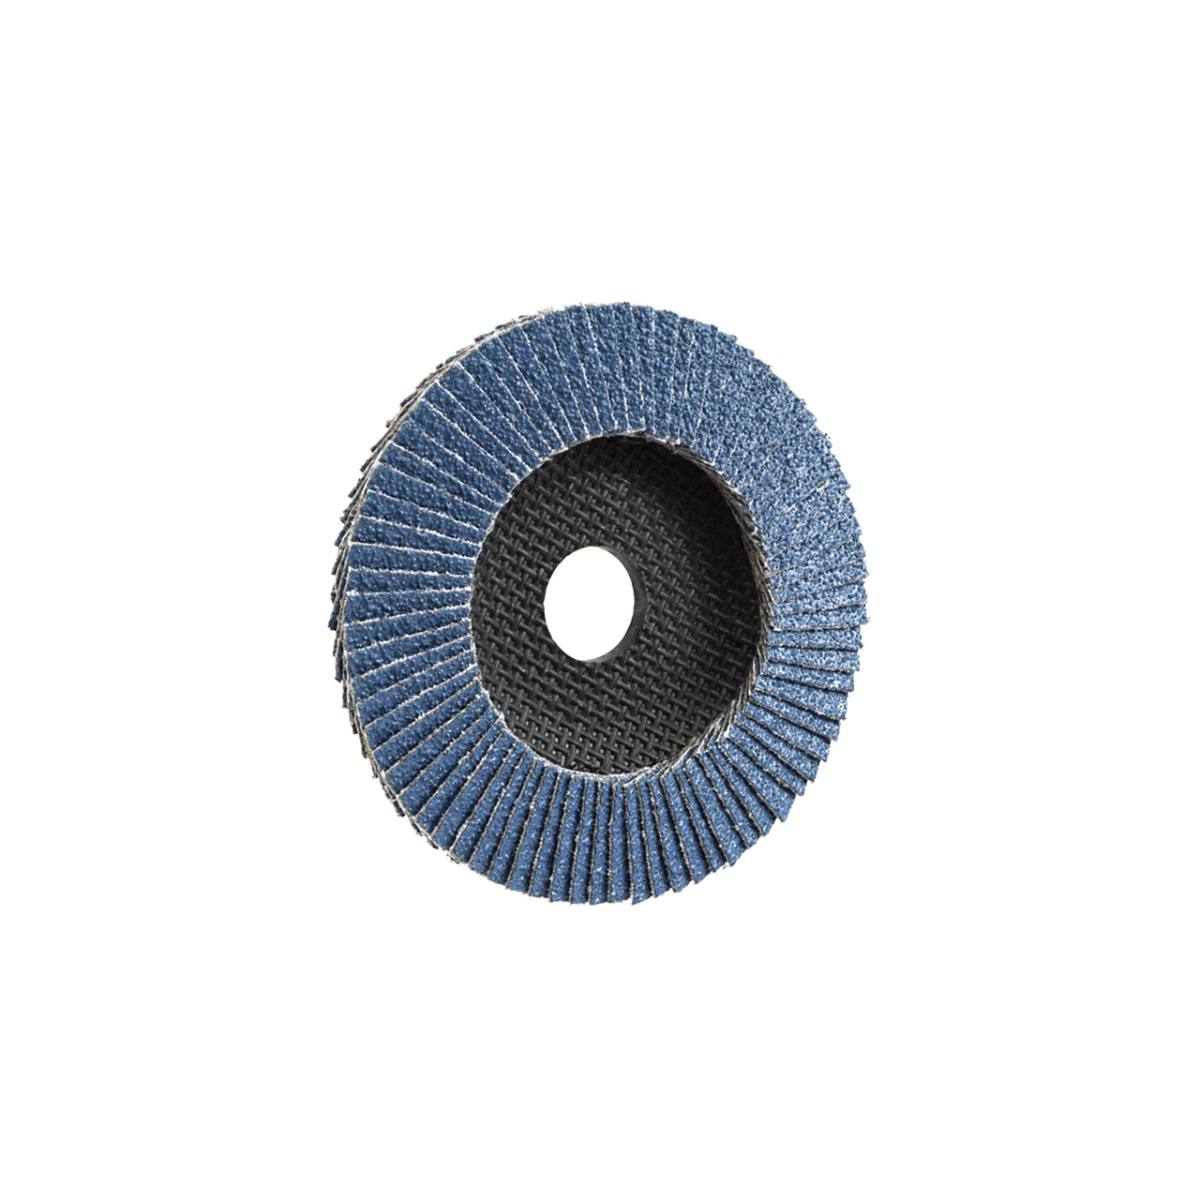 TRIMFIX ZIRCOPUR, 115 mm x 22.2 mm, grit 60, flap disc